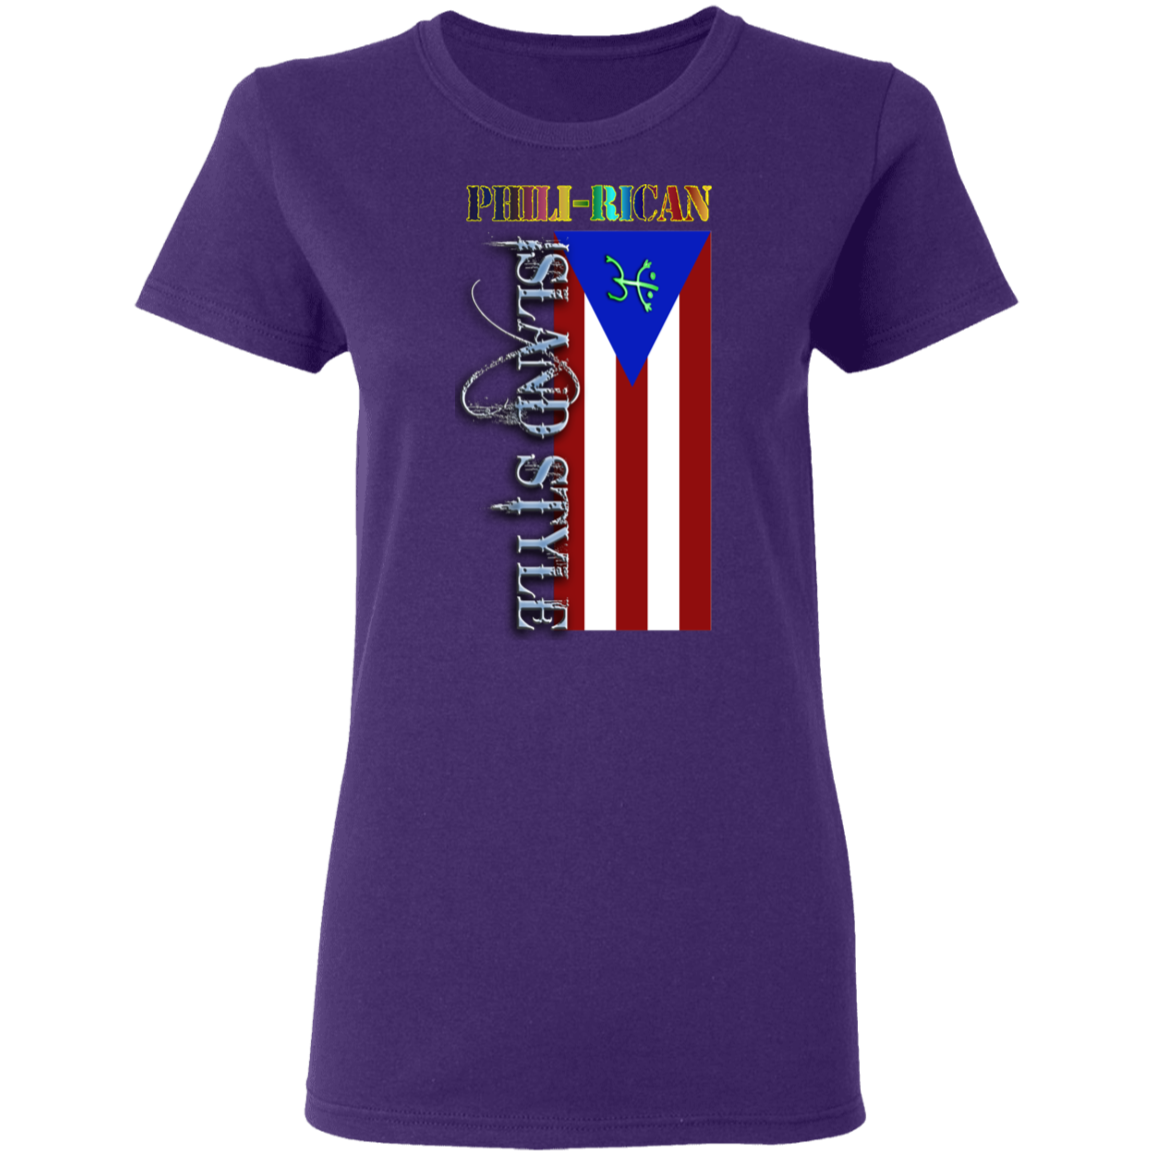 Phili-Rican Ladies' 5.3 oz. T-Shirt